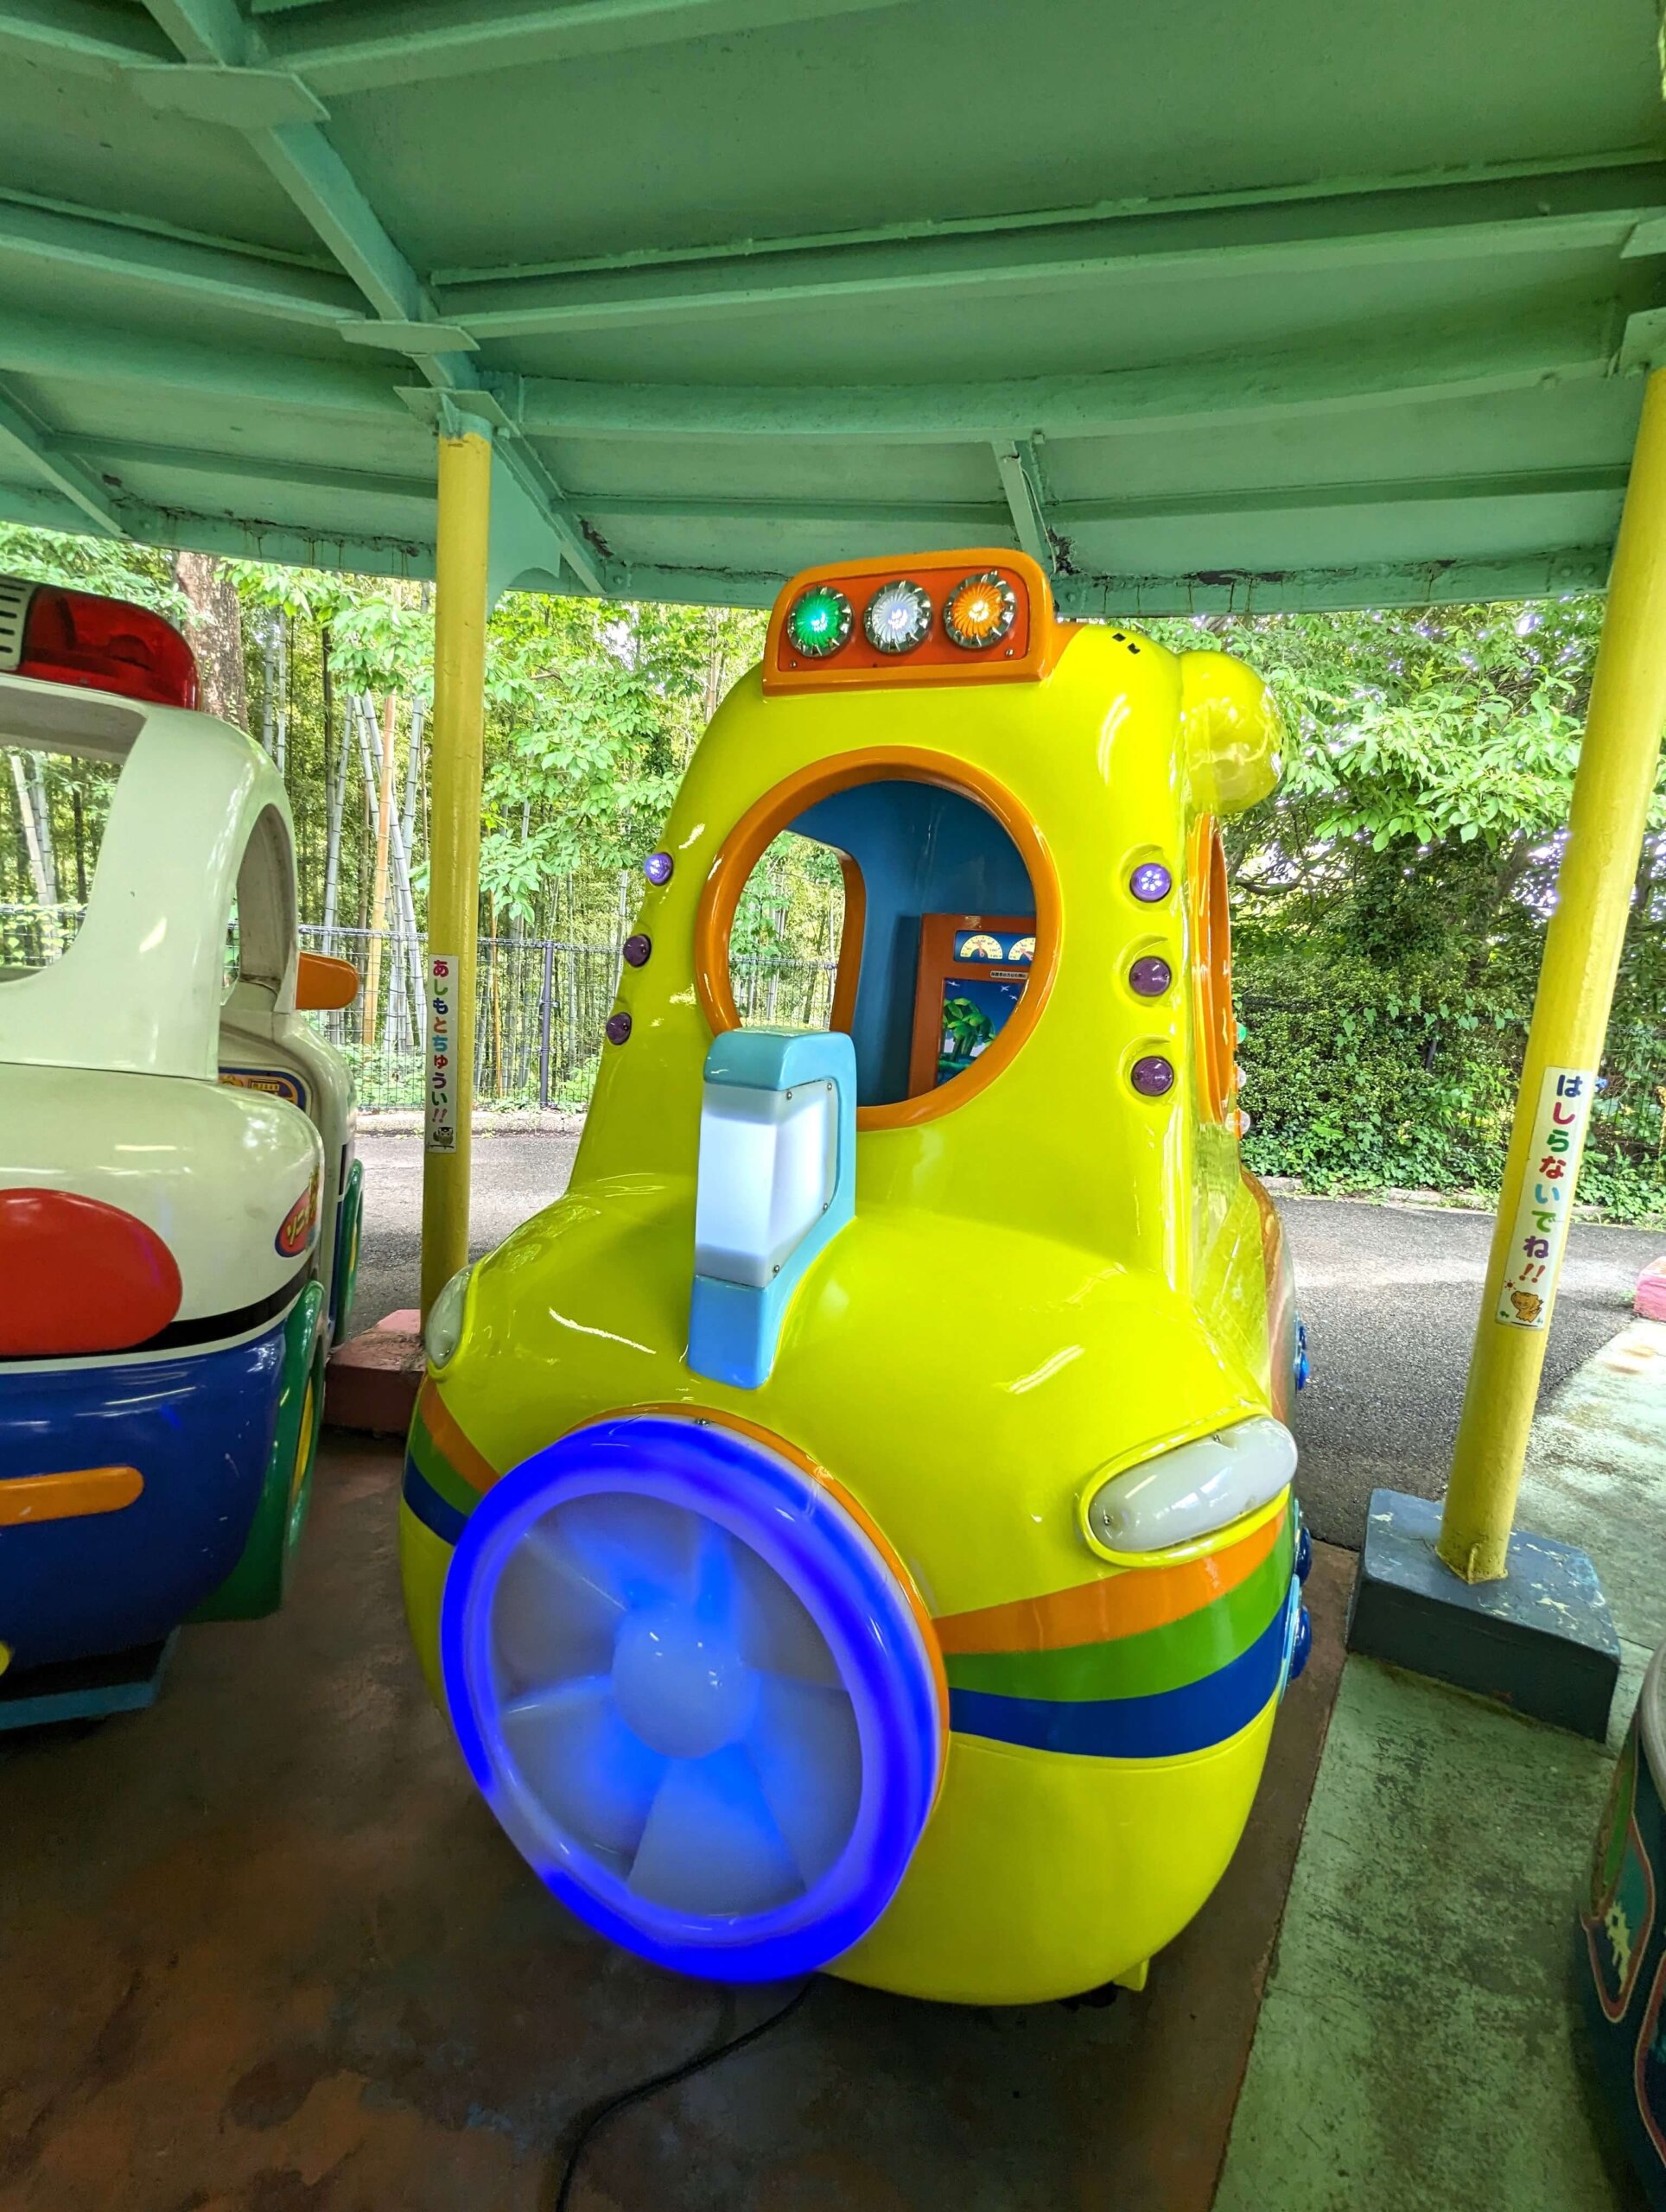 福岡市動物園の南園に位置する遊戯施設「ミニ遊園地」の遊具、黄色の乗り物